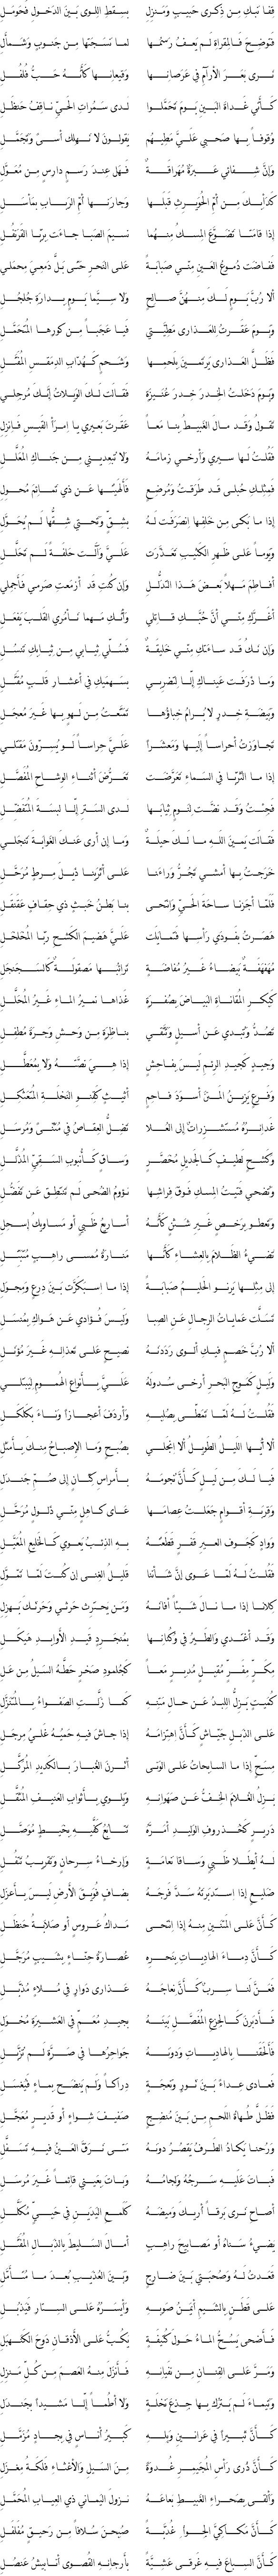 من روائع الشعر العربي.....المعلقات العشر Kais10